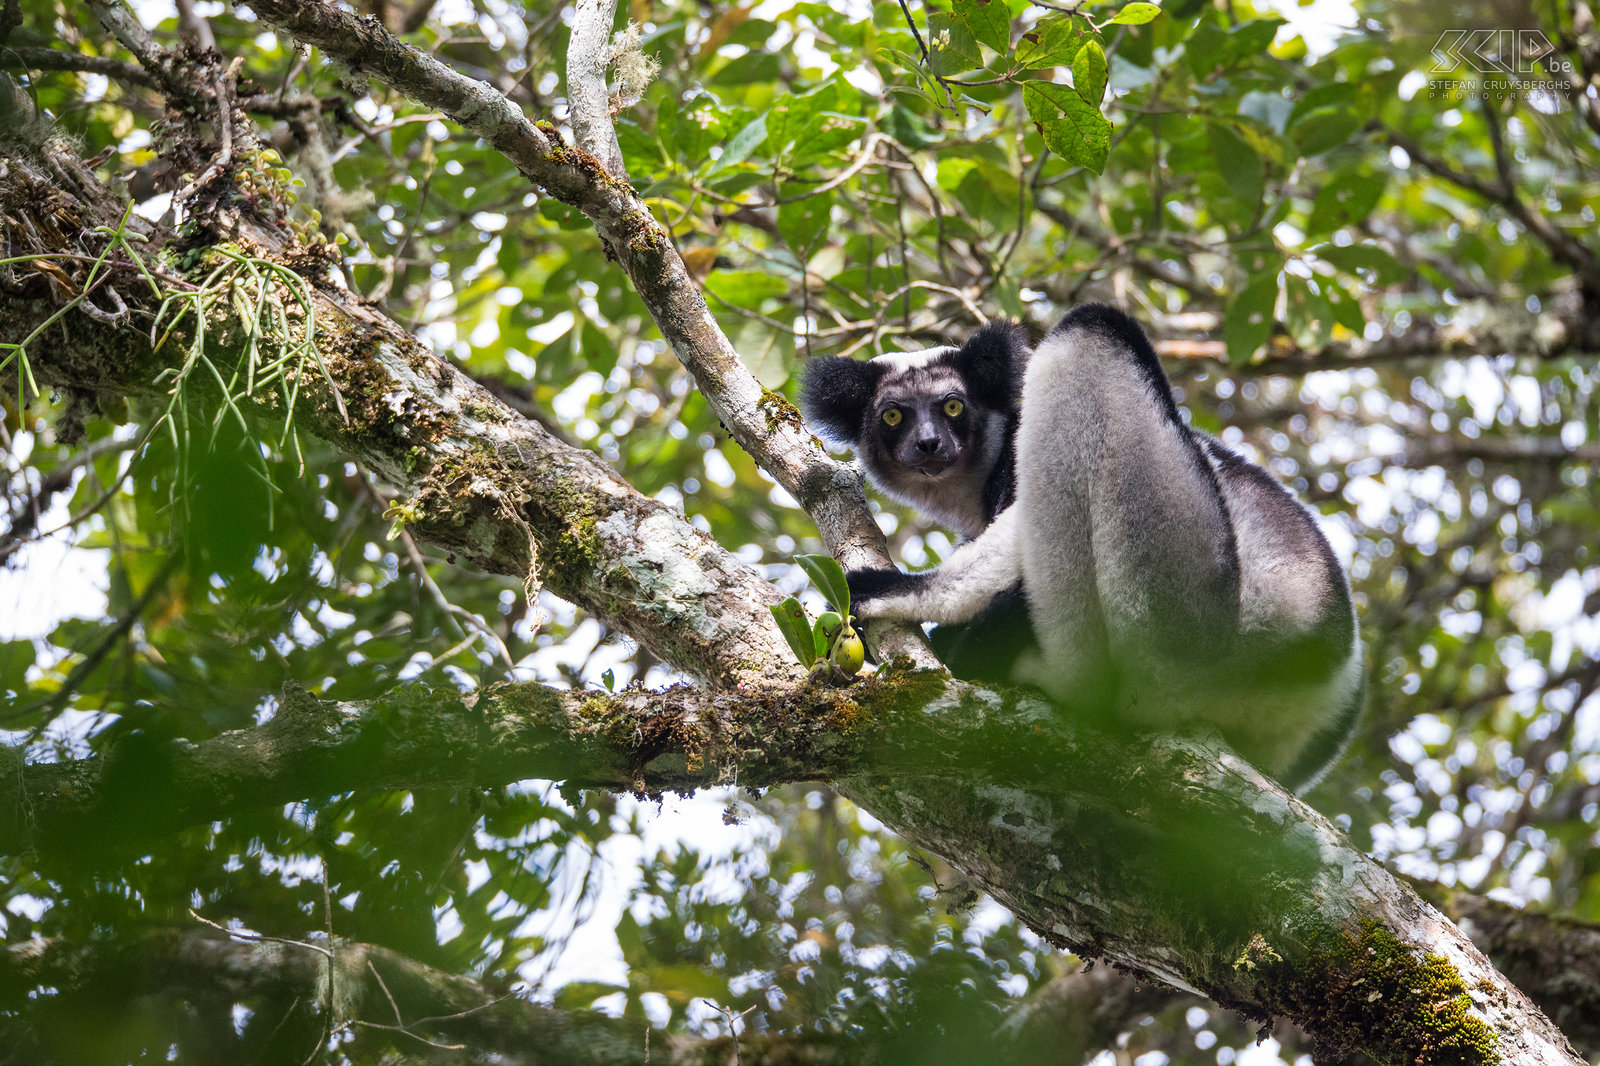 Andasibe - Indri De indri (Indri indri) is de grootste levende makisoort en ze leven in het laagland en montane bossen van een klein deel van de oostkust van Madagaskar. Het is een heel bijzondere dier maar het kan gemakkelijk gezien worden in de regenwouden van Andasibe en Mantadia. Ze worden tot bijna 120cm lang en wegen tussen de 6 en 9,5kg. De indri is bekend om zijn oorverdovende en kenmerkende gezangen. Als je het een keer gehoord hebt, zal je het niet snel vergeten. Stefan Cruysberghs